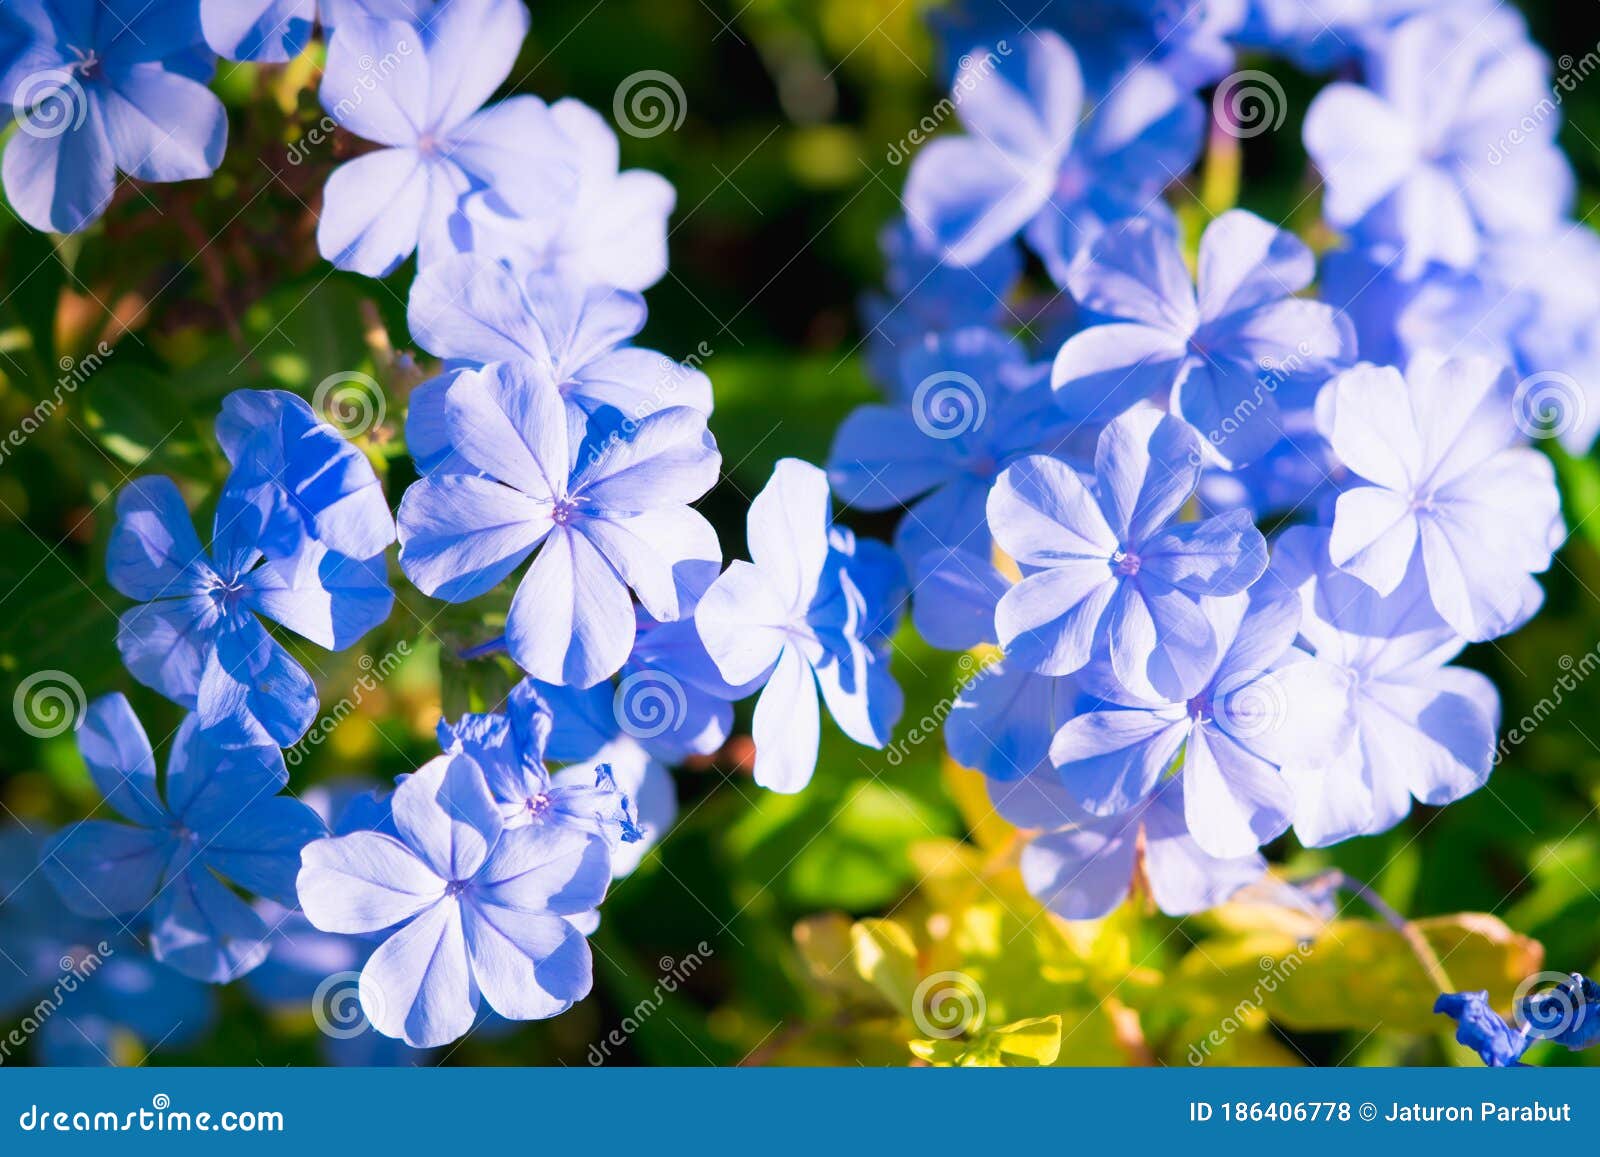 Closeuse Nature Fleur De Verveine Bleue Dans Le Jardin Photo stock - Image  du jardin, copie: 186406778